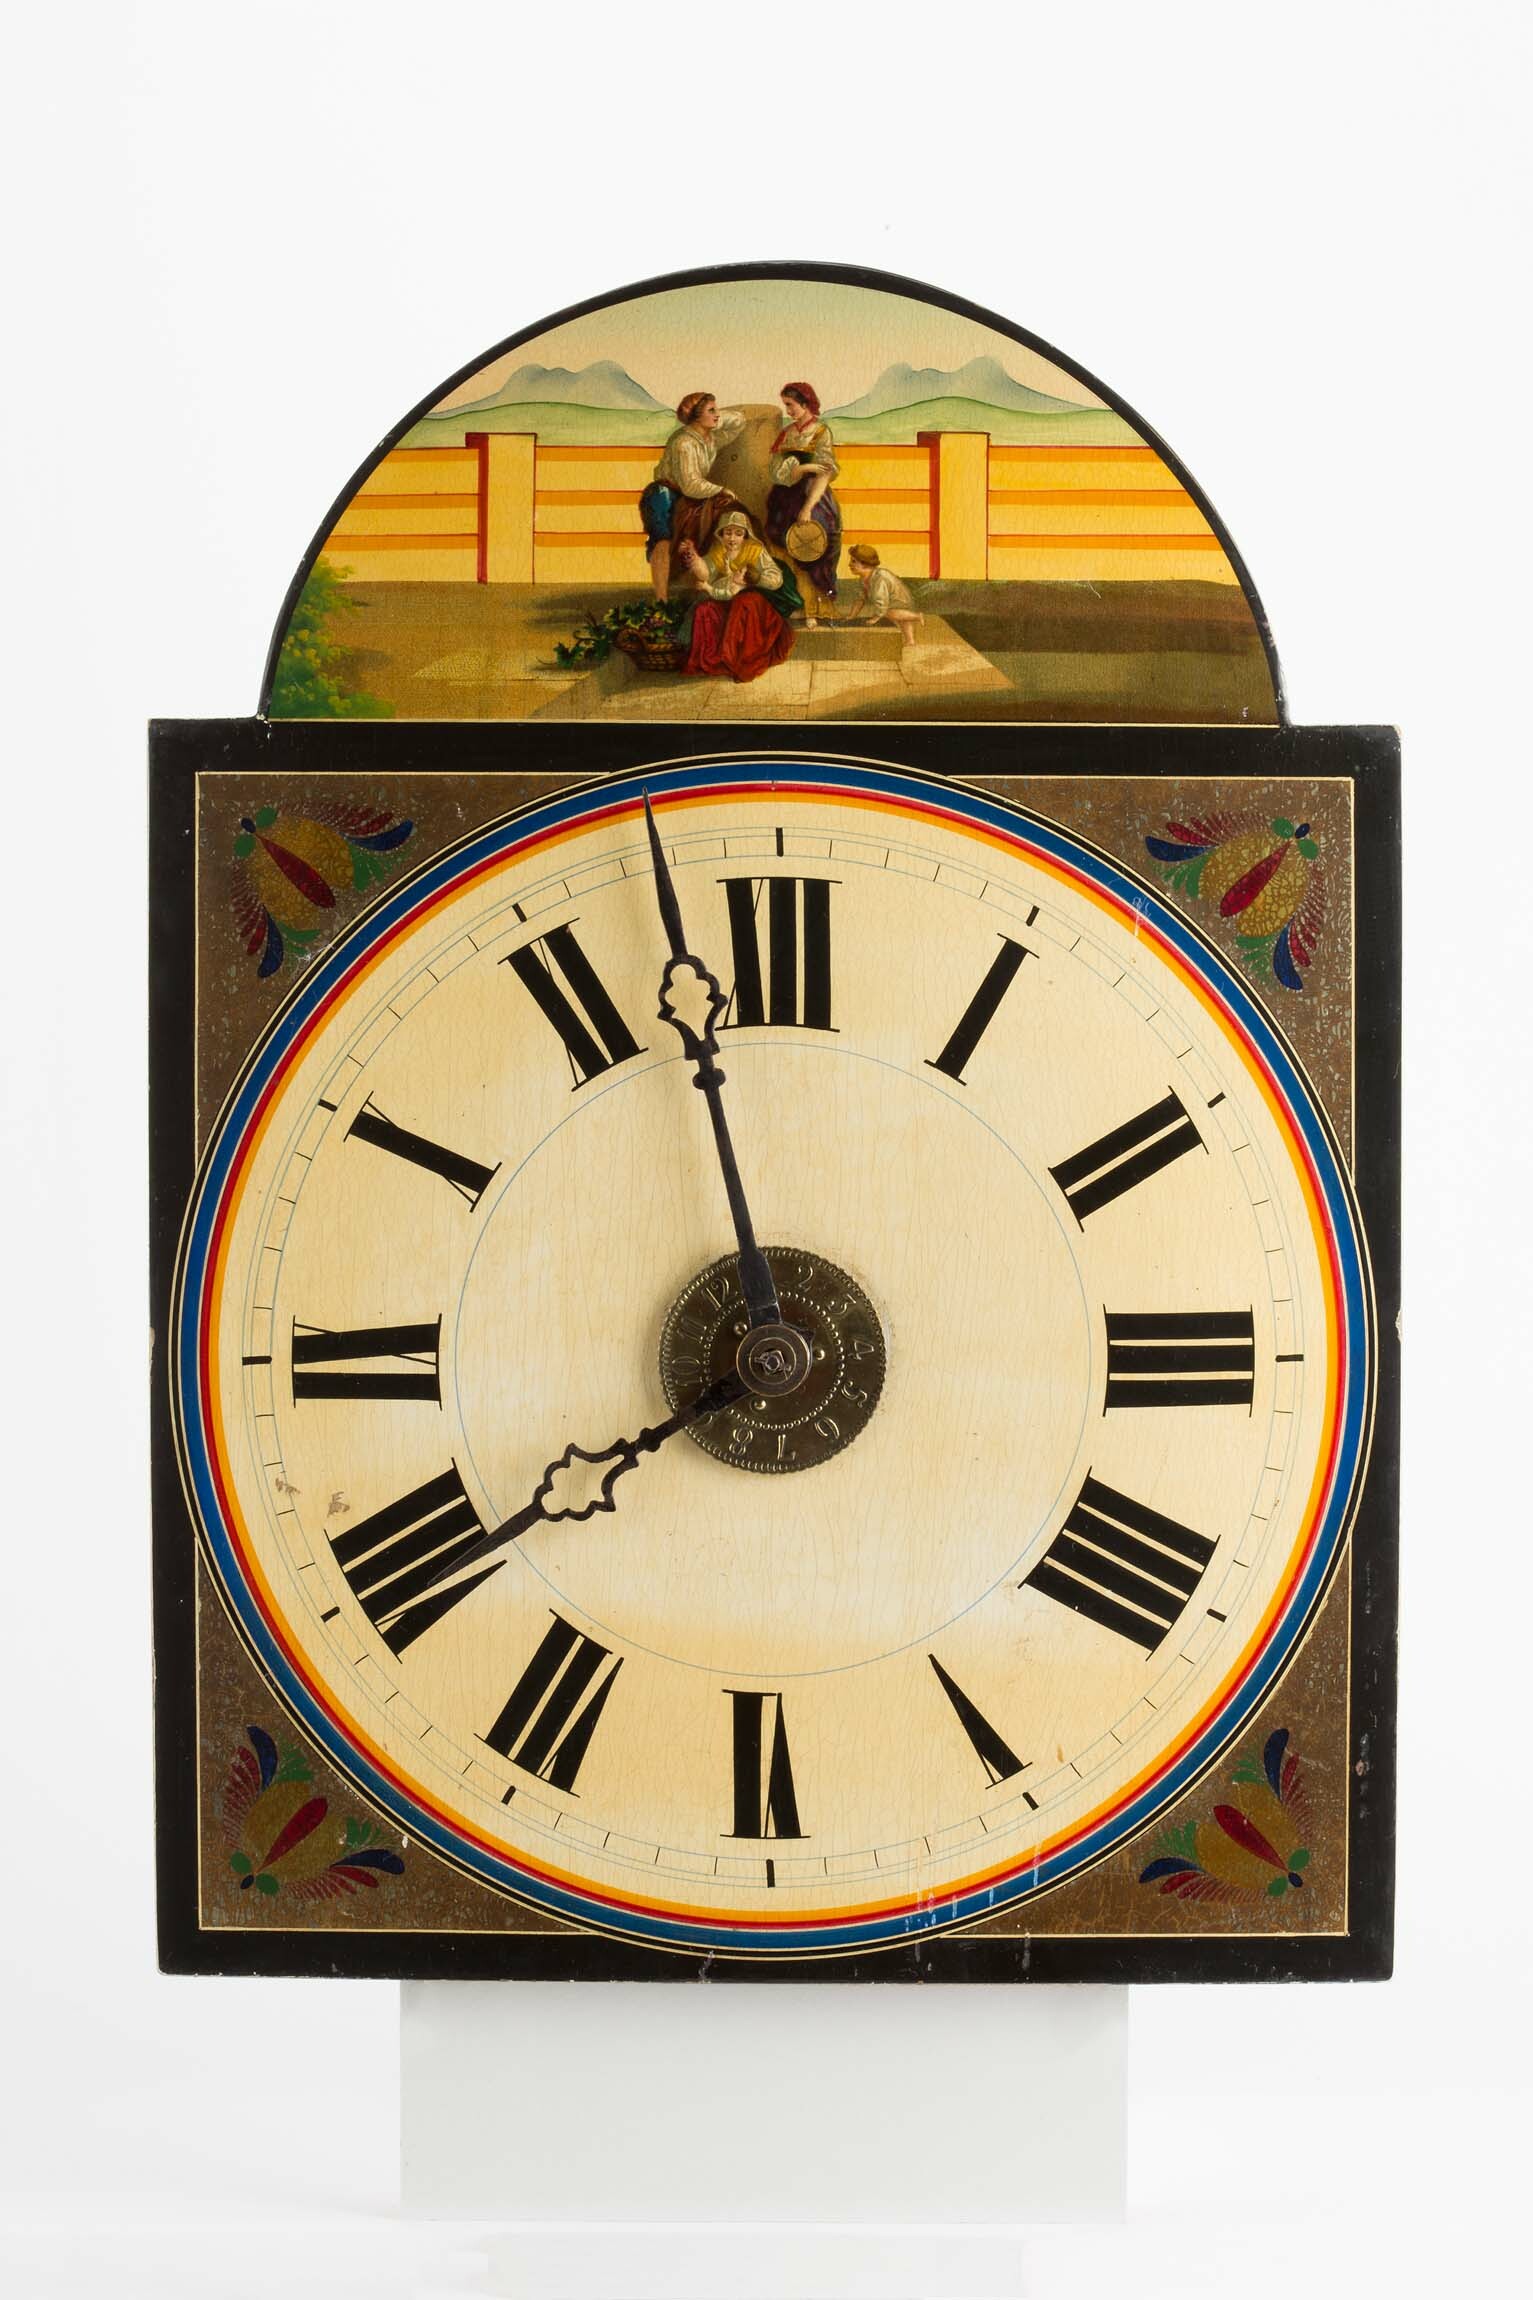 Lackschilduhr, Oswald Maurer und Cie., Eisenbach, 2. Hälfte 19. Jahrhundert (Deutsches Uhrenmuseum CC BY-SA)